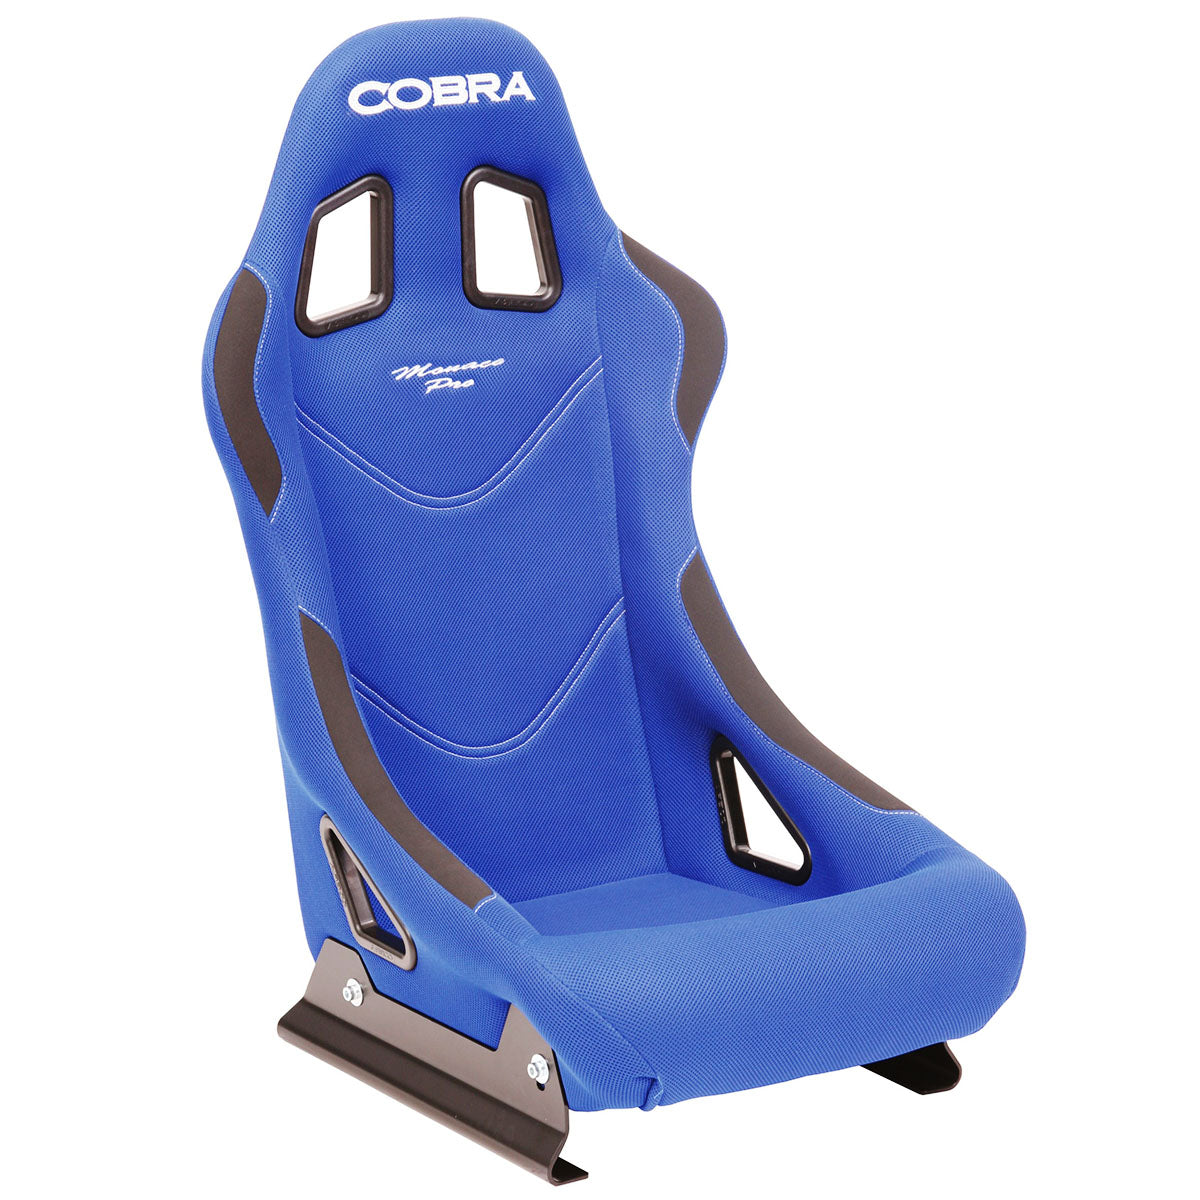 Cobra Monaco Pro Racing Seat